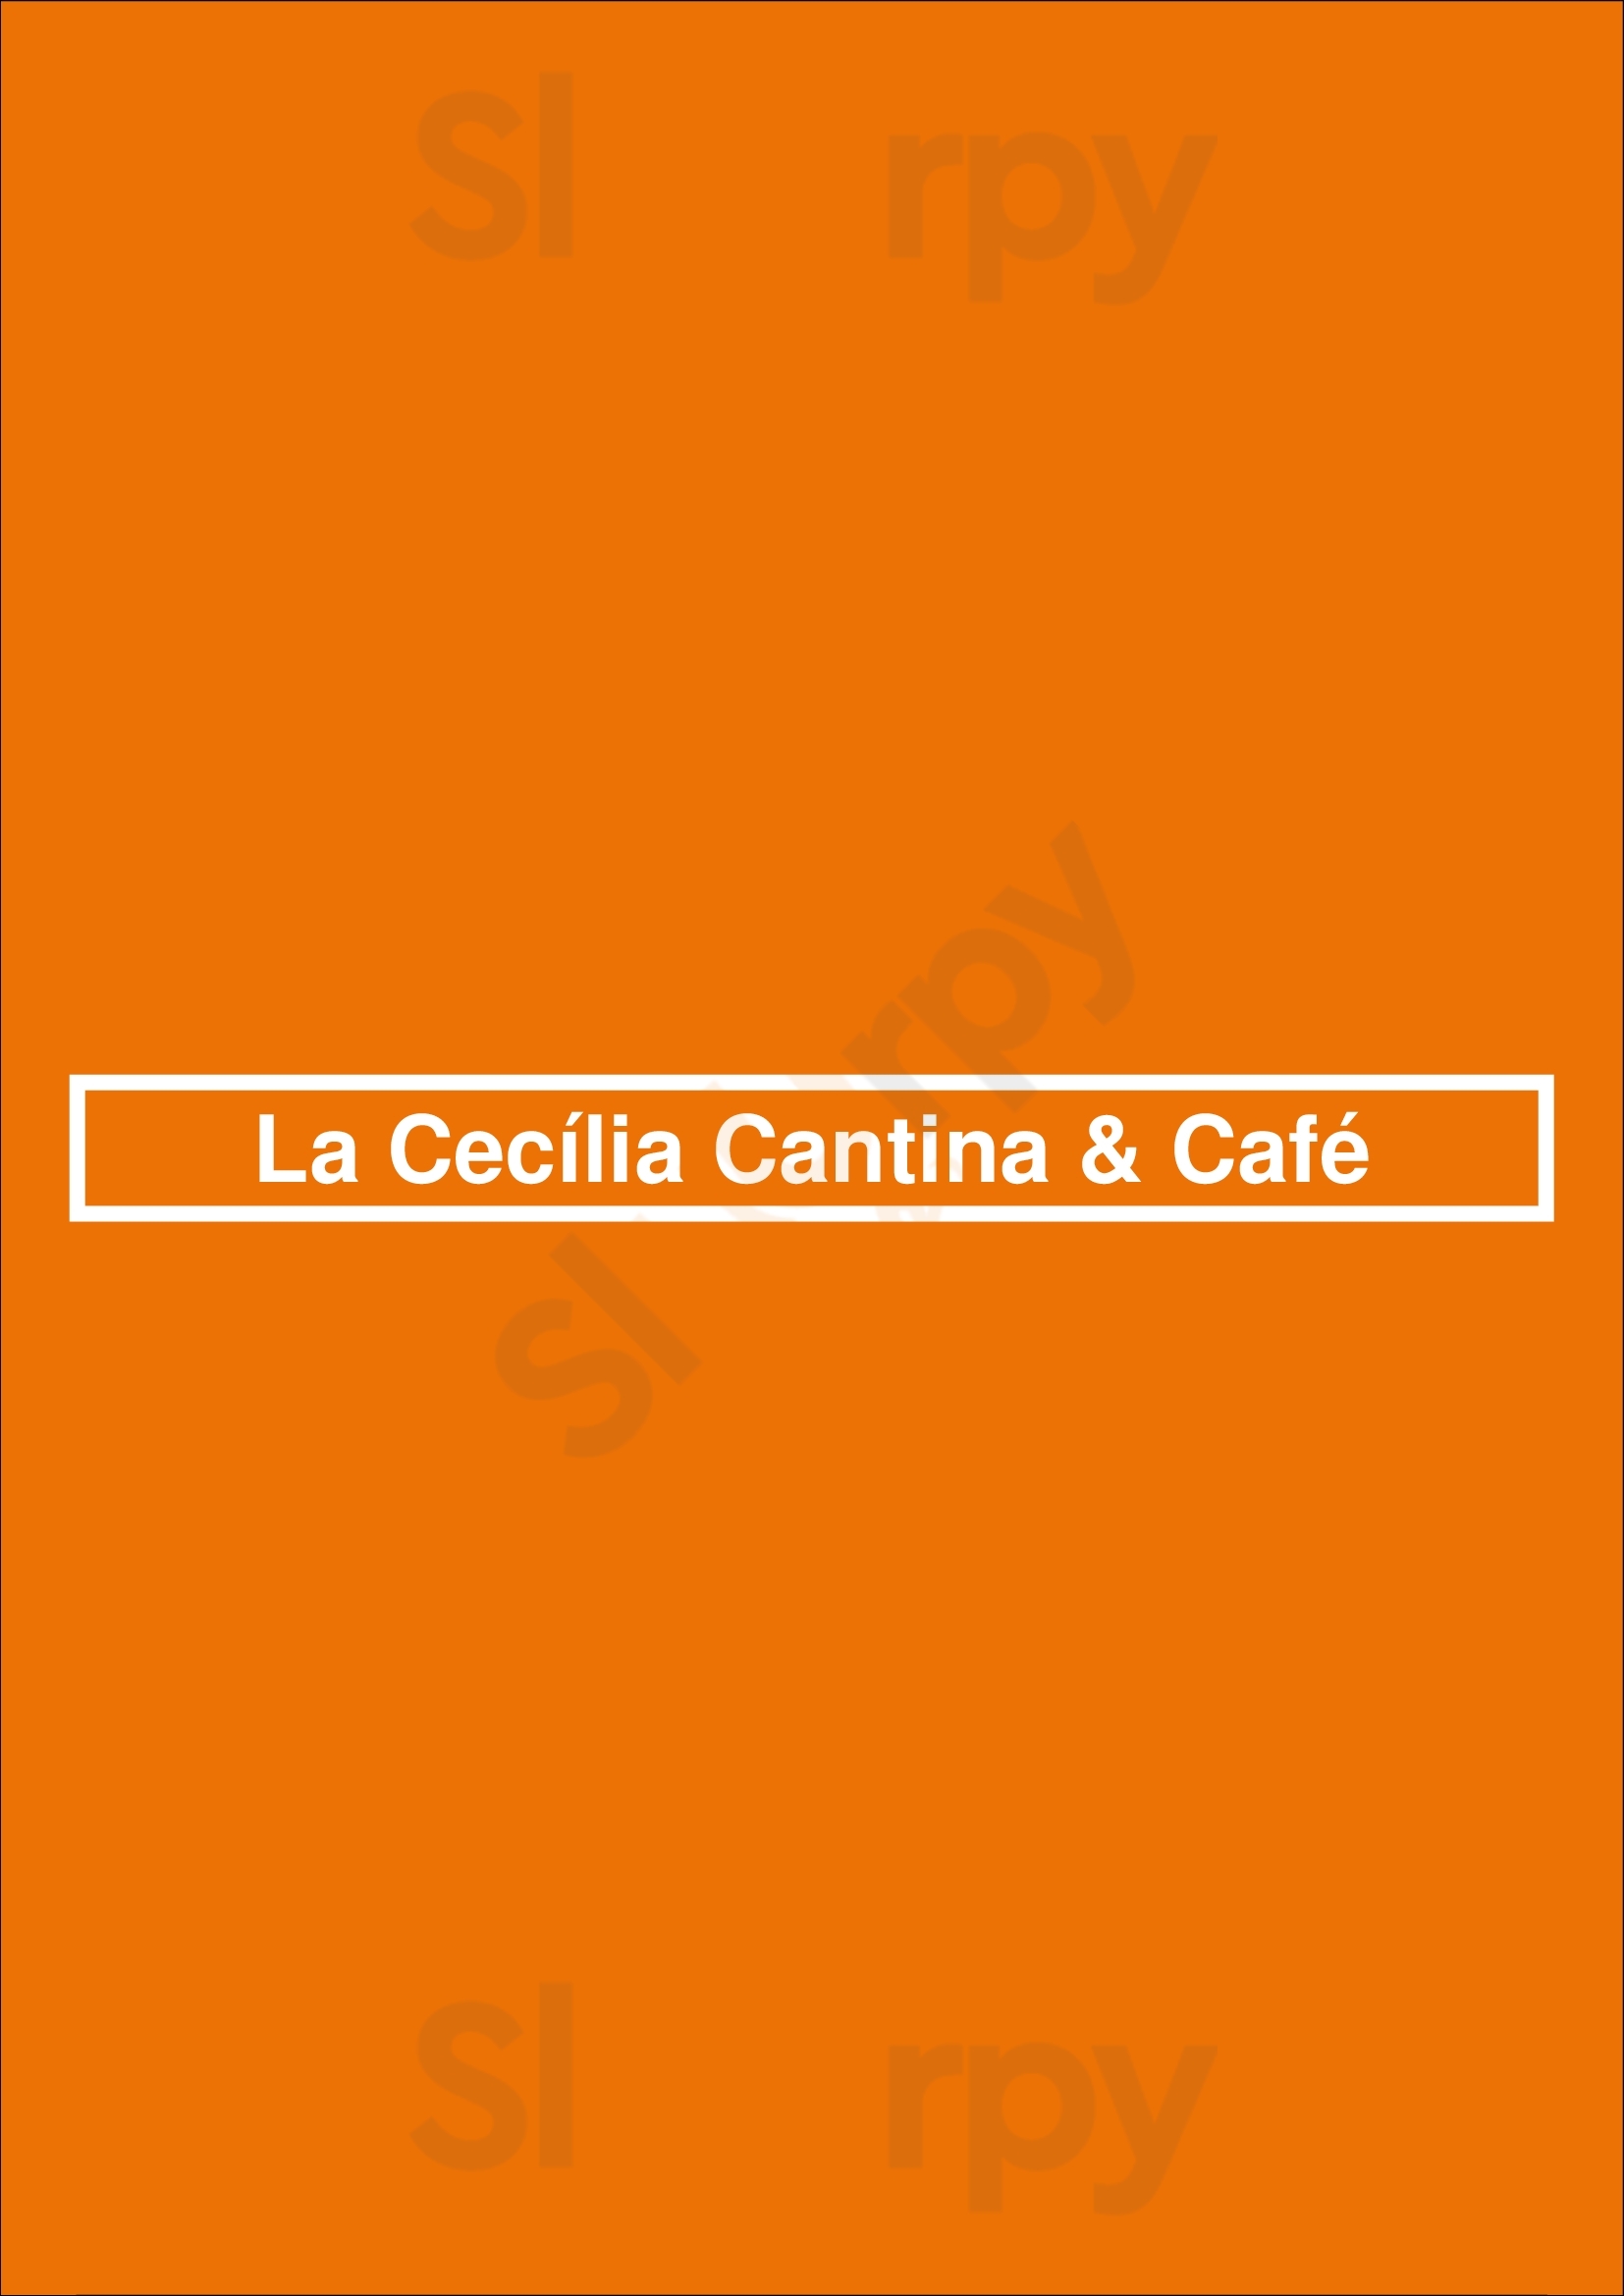 La Cecília Cantina & Café Curitiba Menu - 1